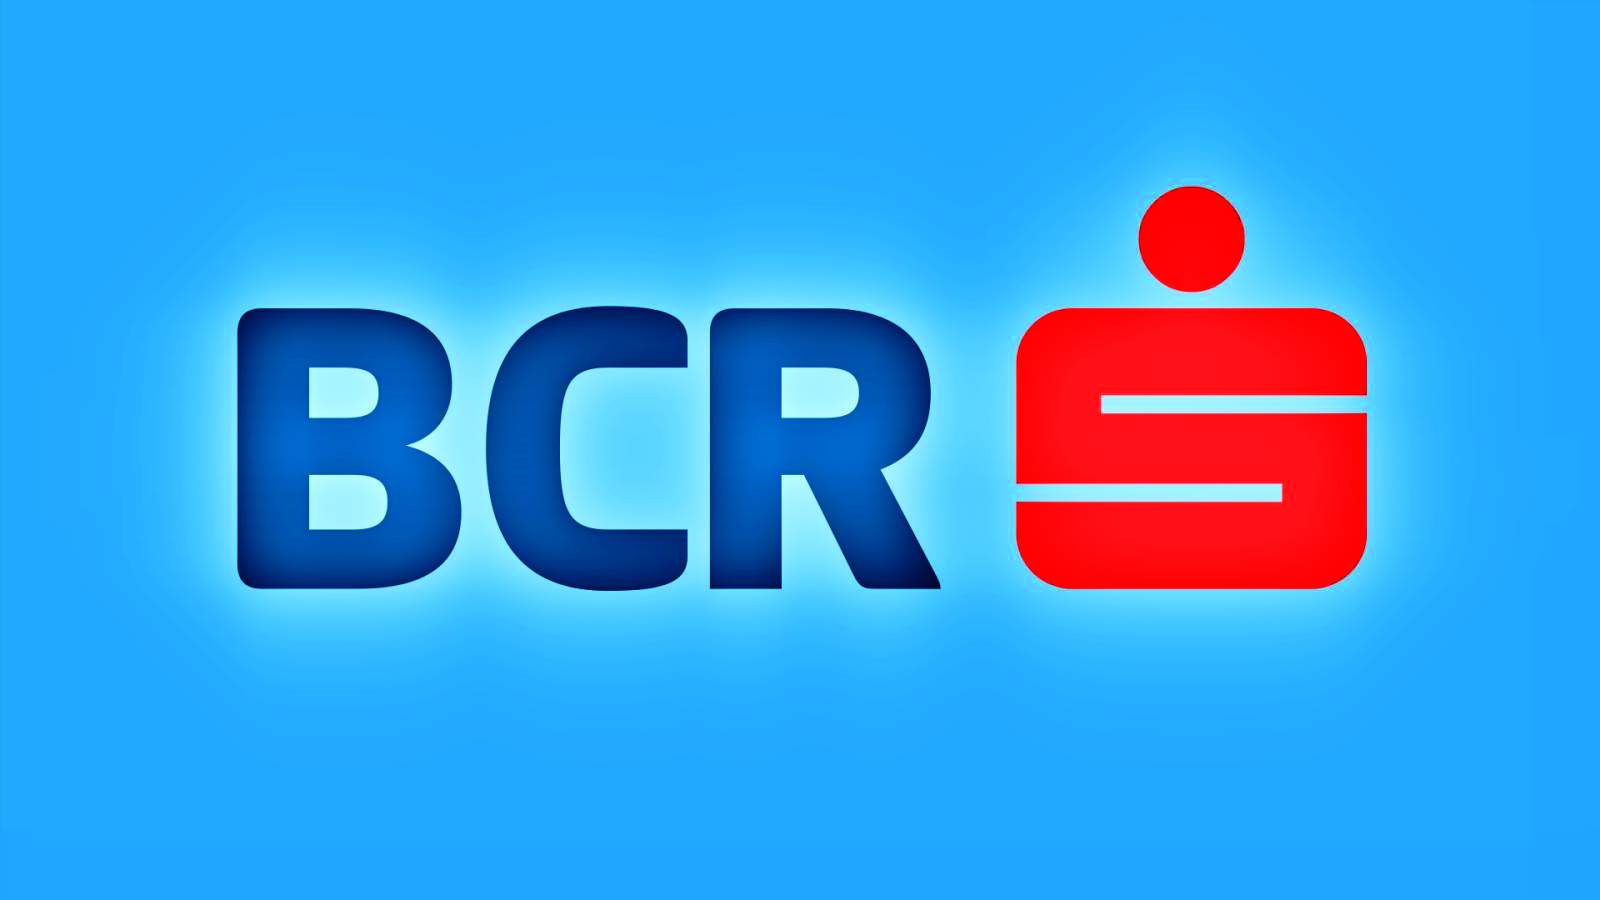 BCR Rumänien urval